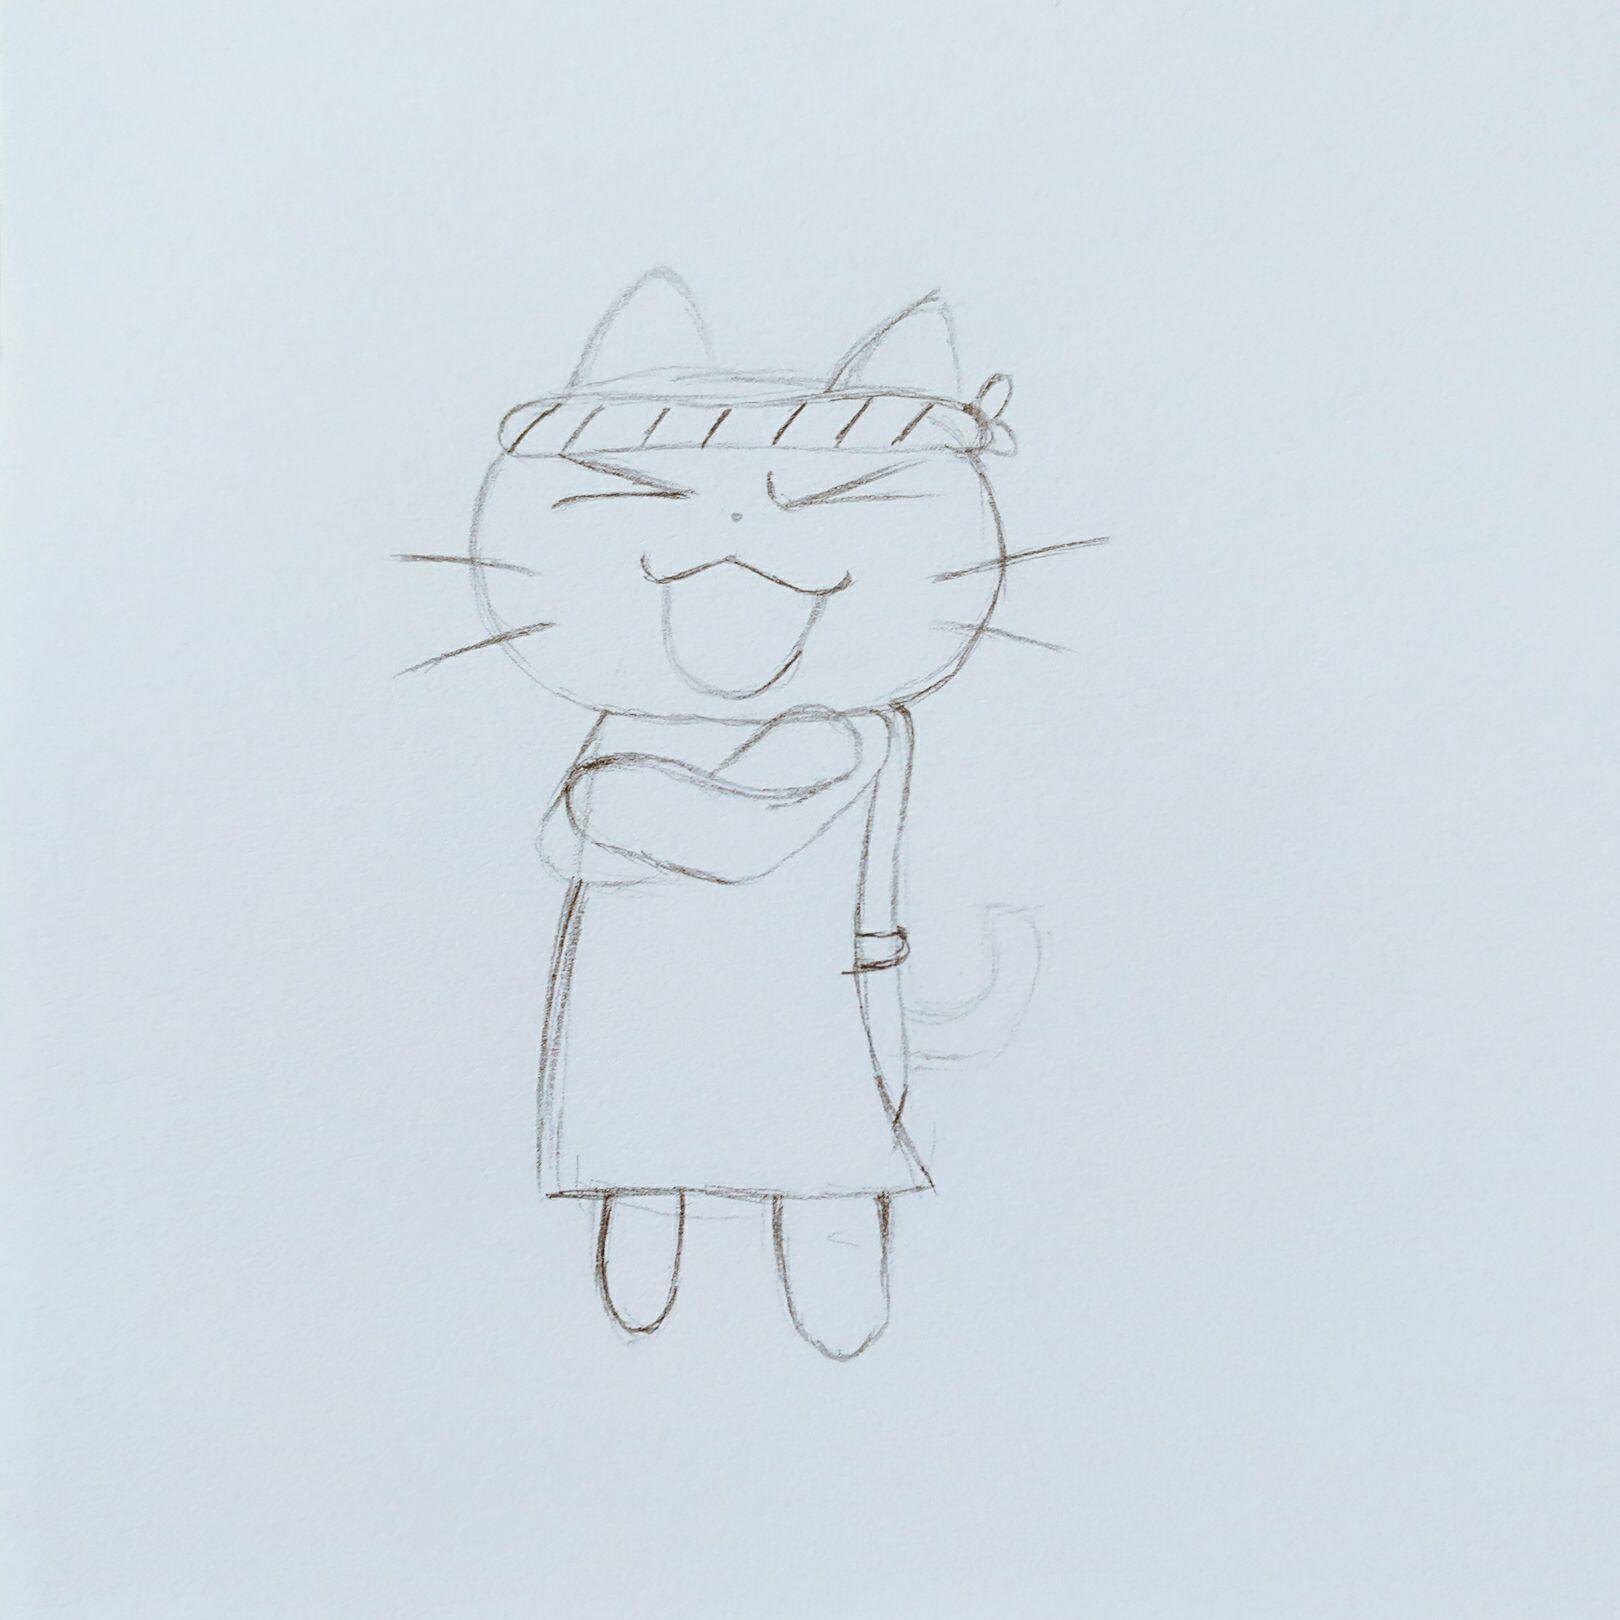 站立的猫咪玩球画面绘画教程 铅笔画画法 毛茸茸逼真细腻[ 图片/6P ] - 优艺星